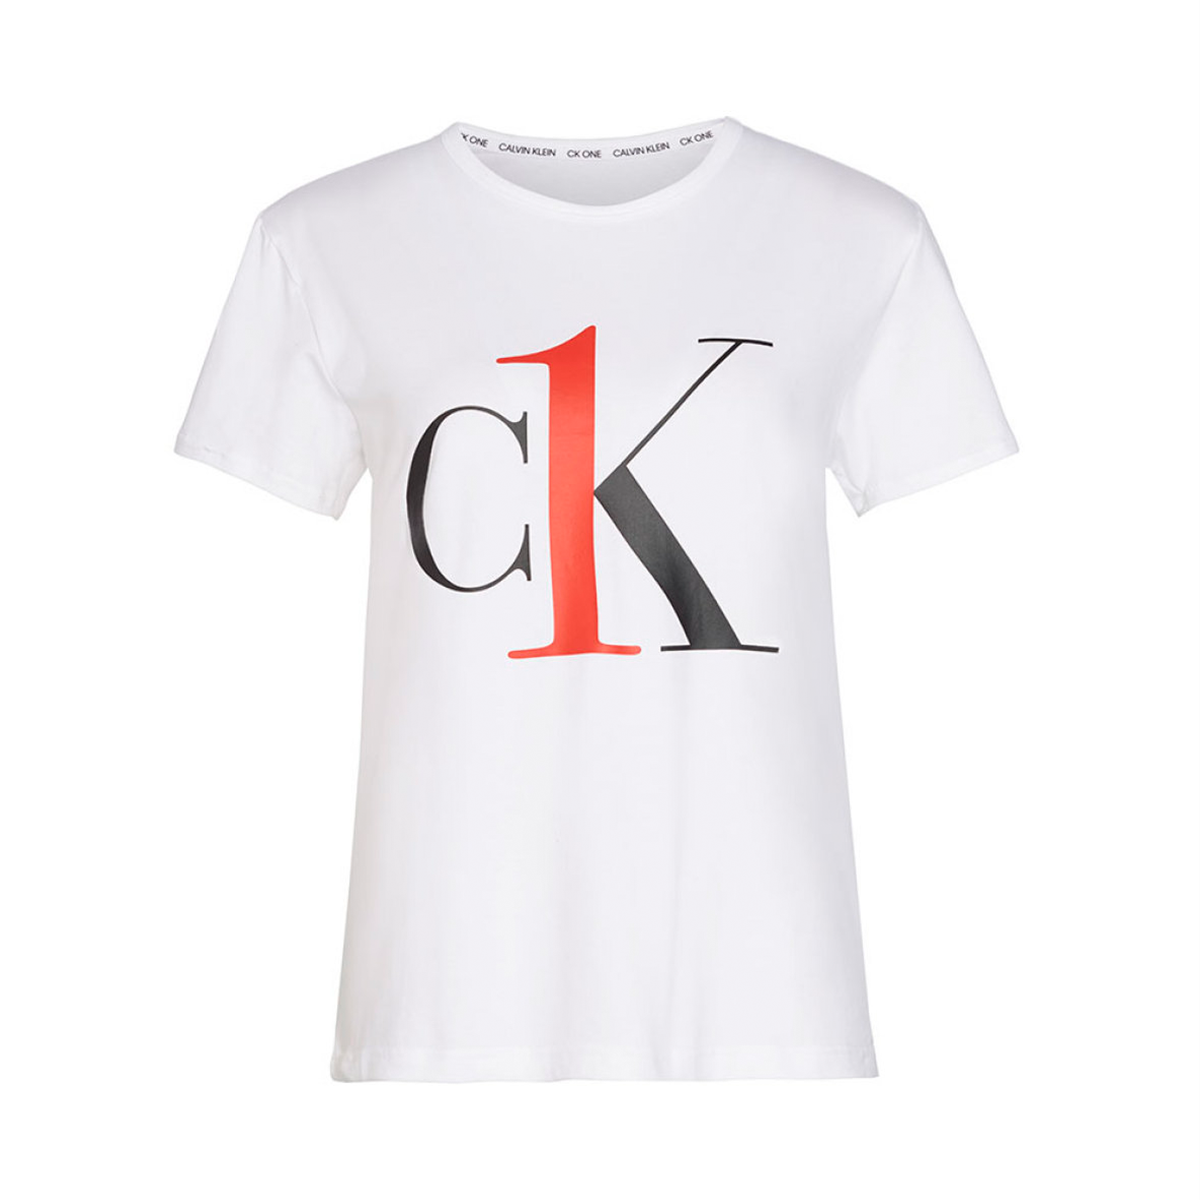 Se Calvin Klein Crew Neck T-shirt, Farve: Hvid, Størrelse: M, Dame hos Netlingeri.dk